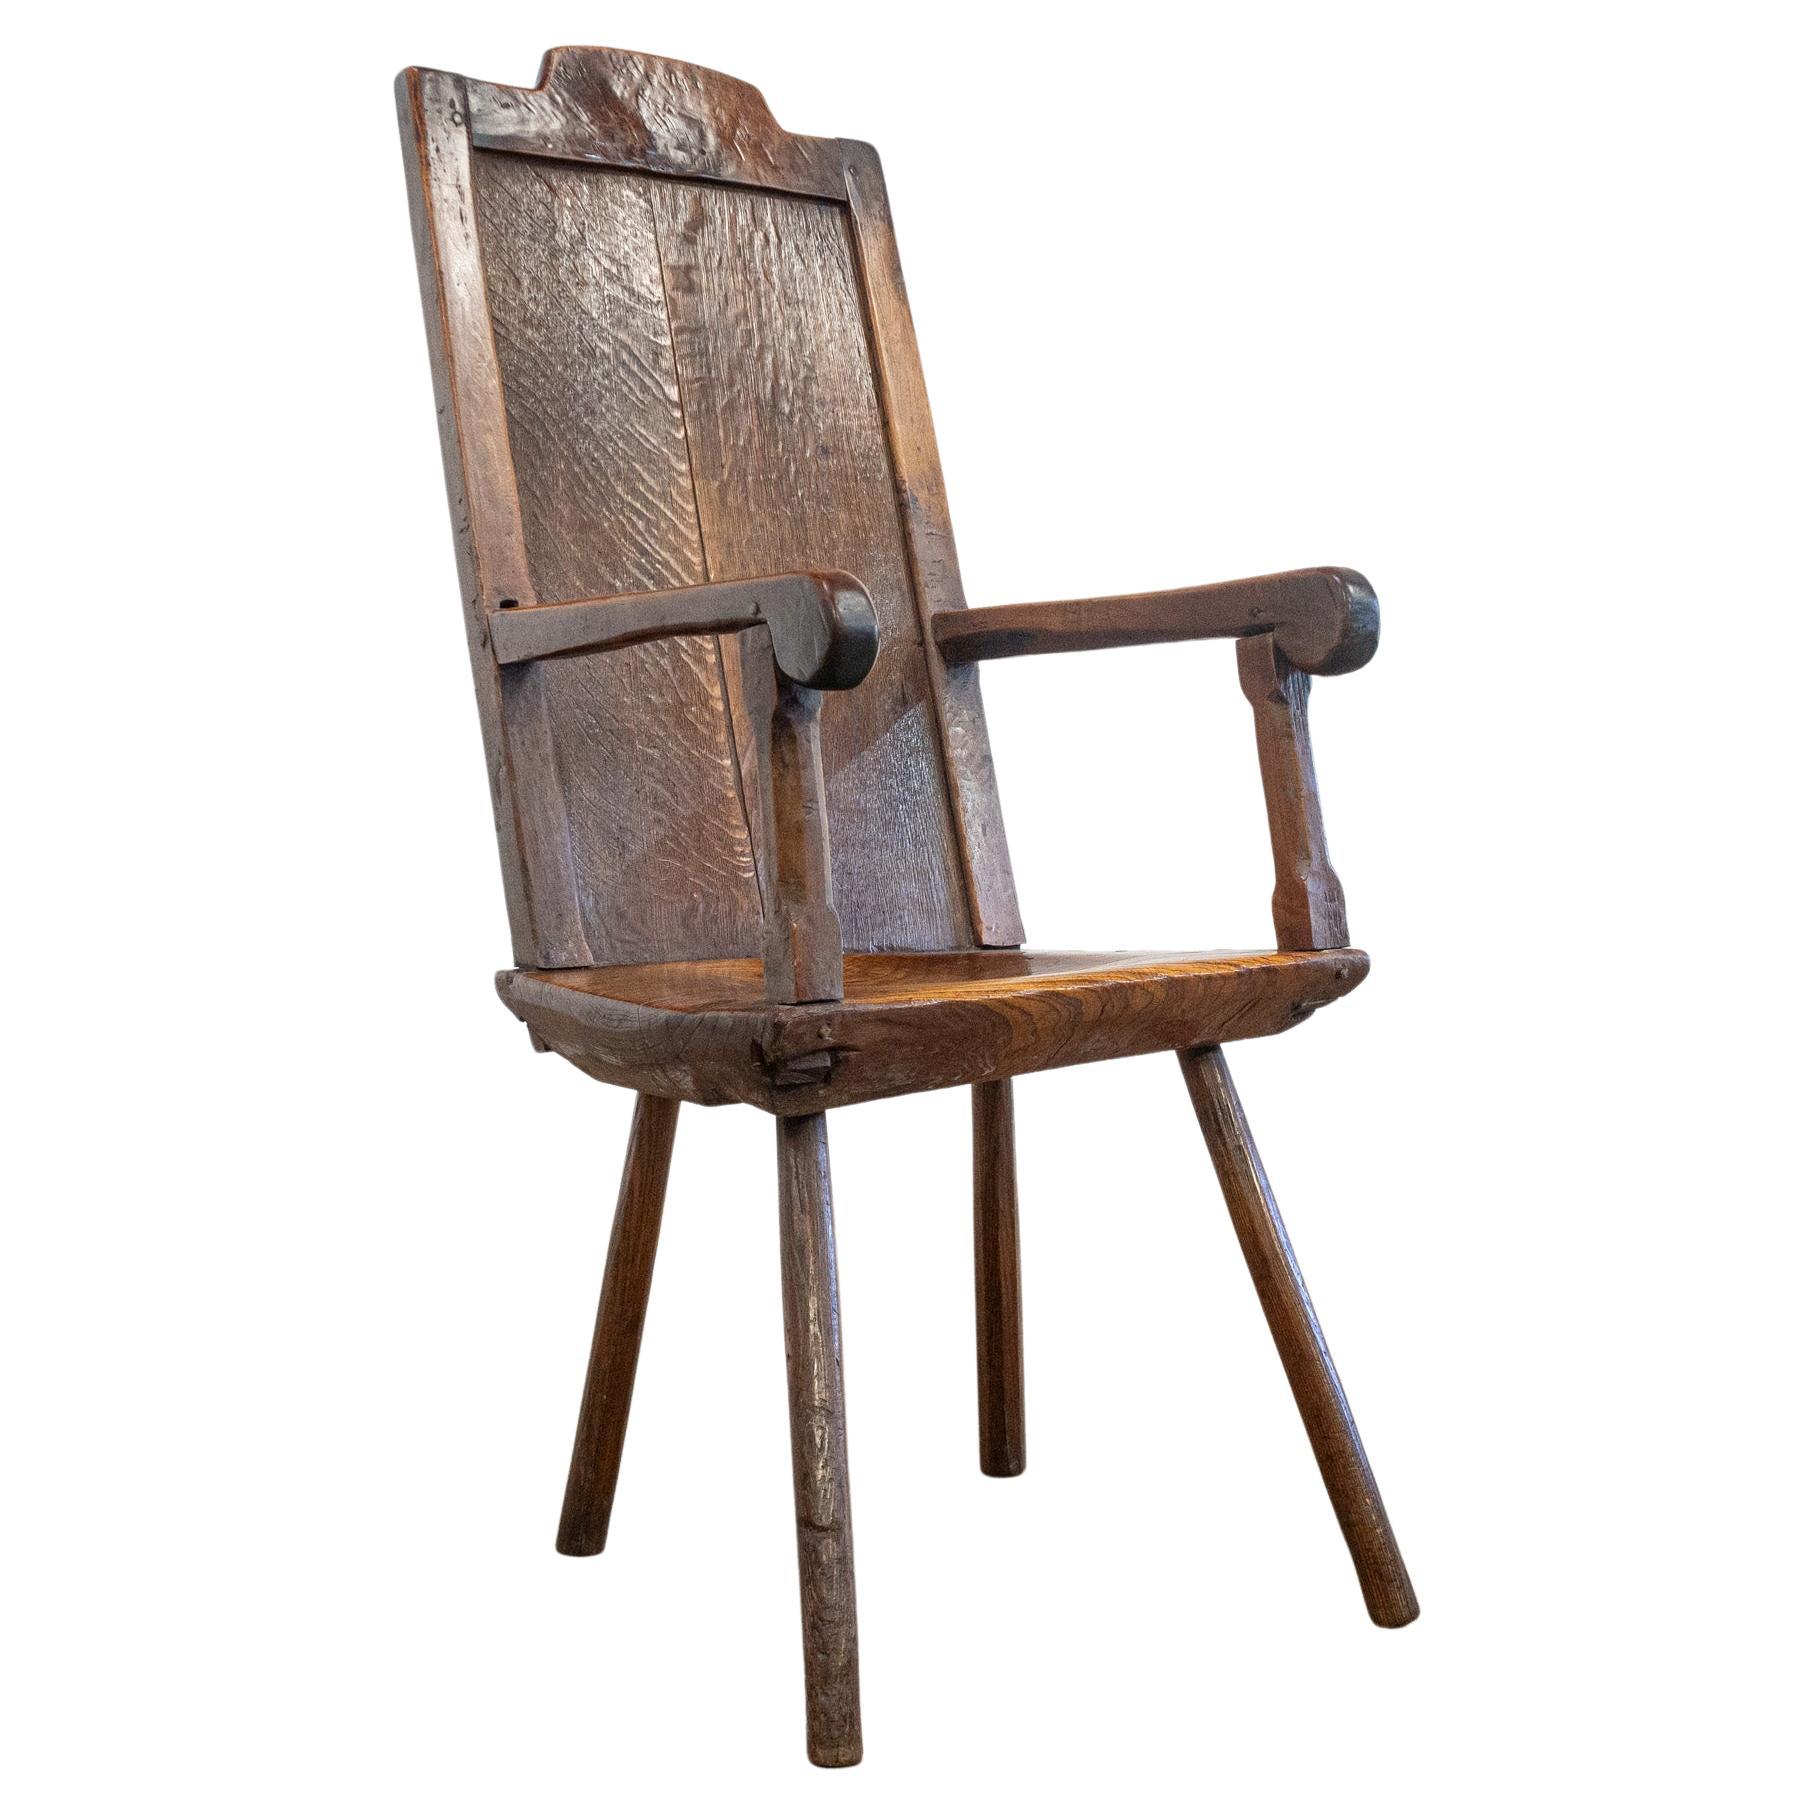 Chaise primitive en Oak du 18e siècle